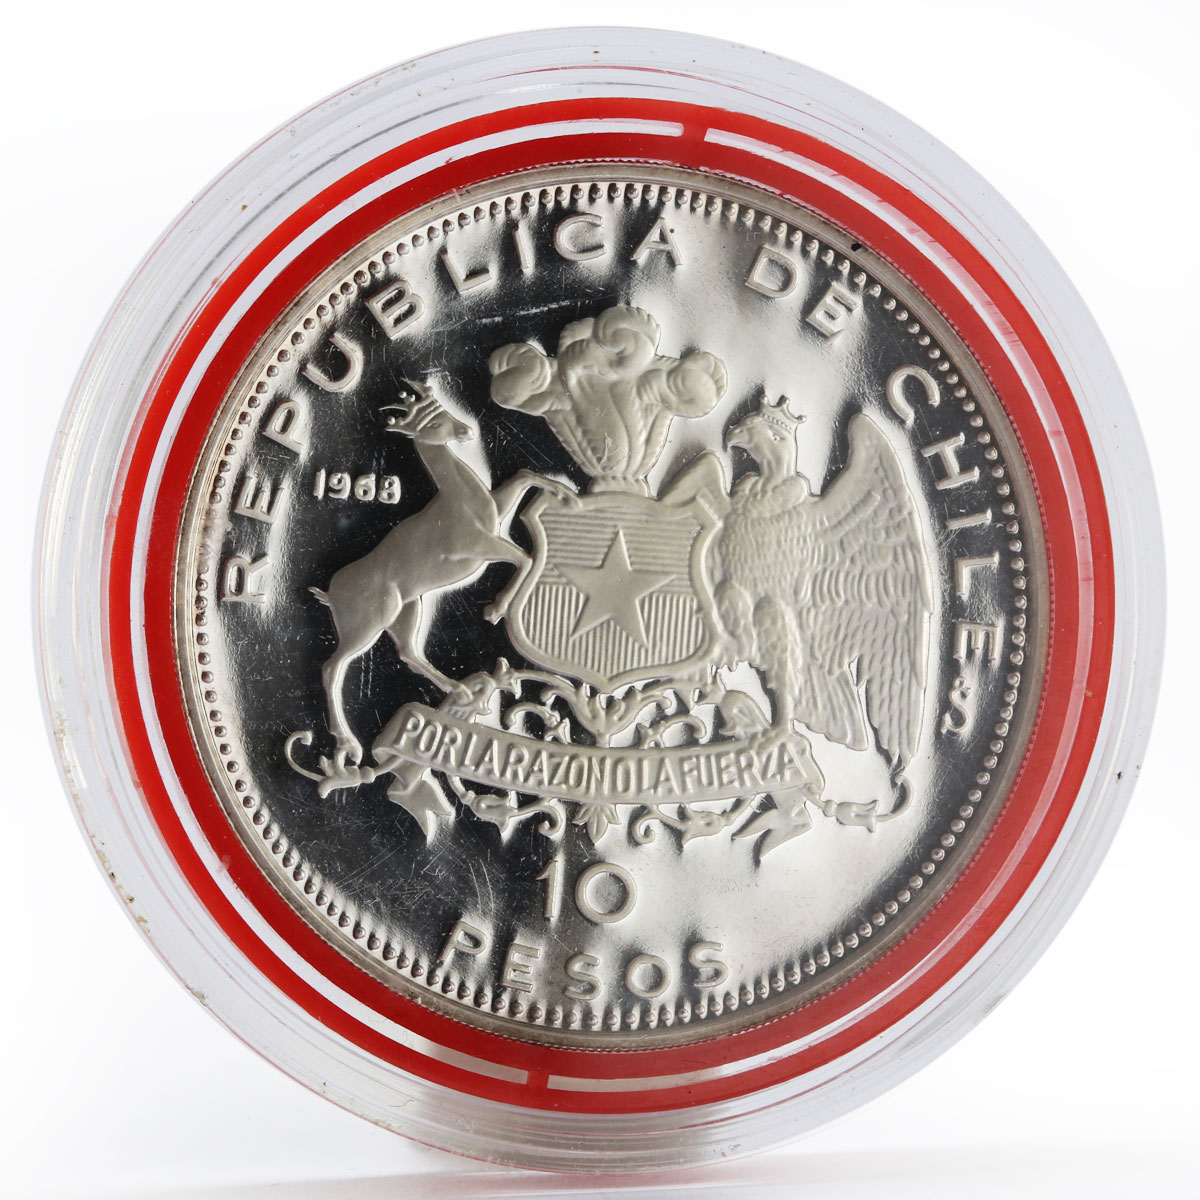 Chile 10 pesos Escuadra Libertadora Ship proof silver coin 1968